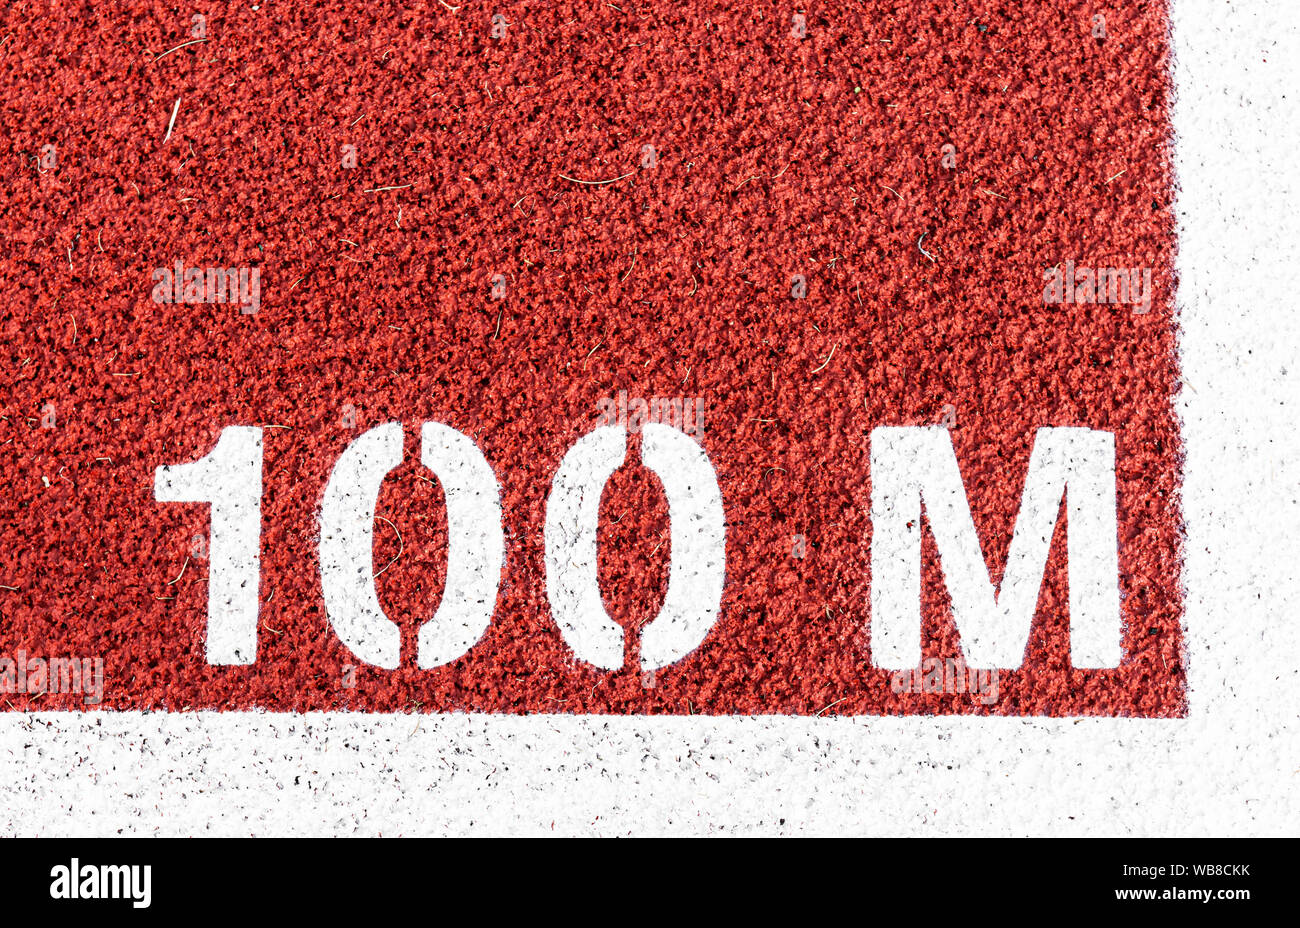 100 m ist am Start der Strich auf eine rote Spur gemalt. Stockfoto